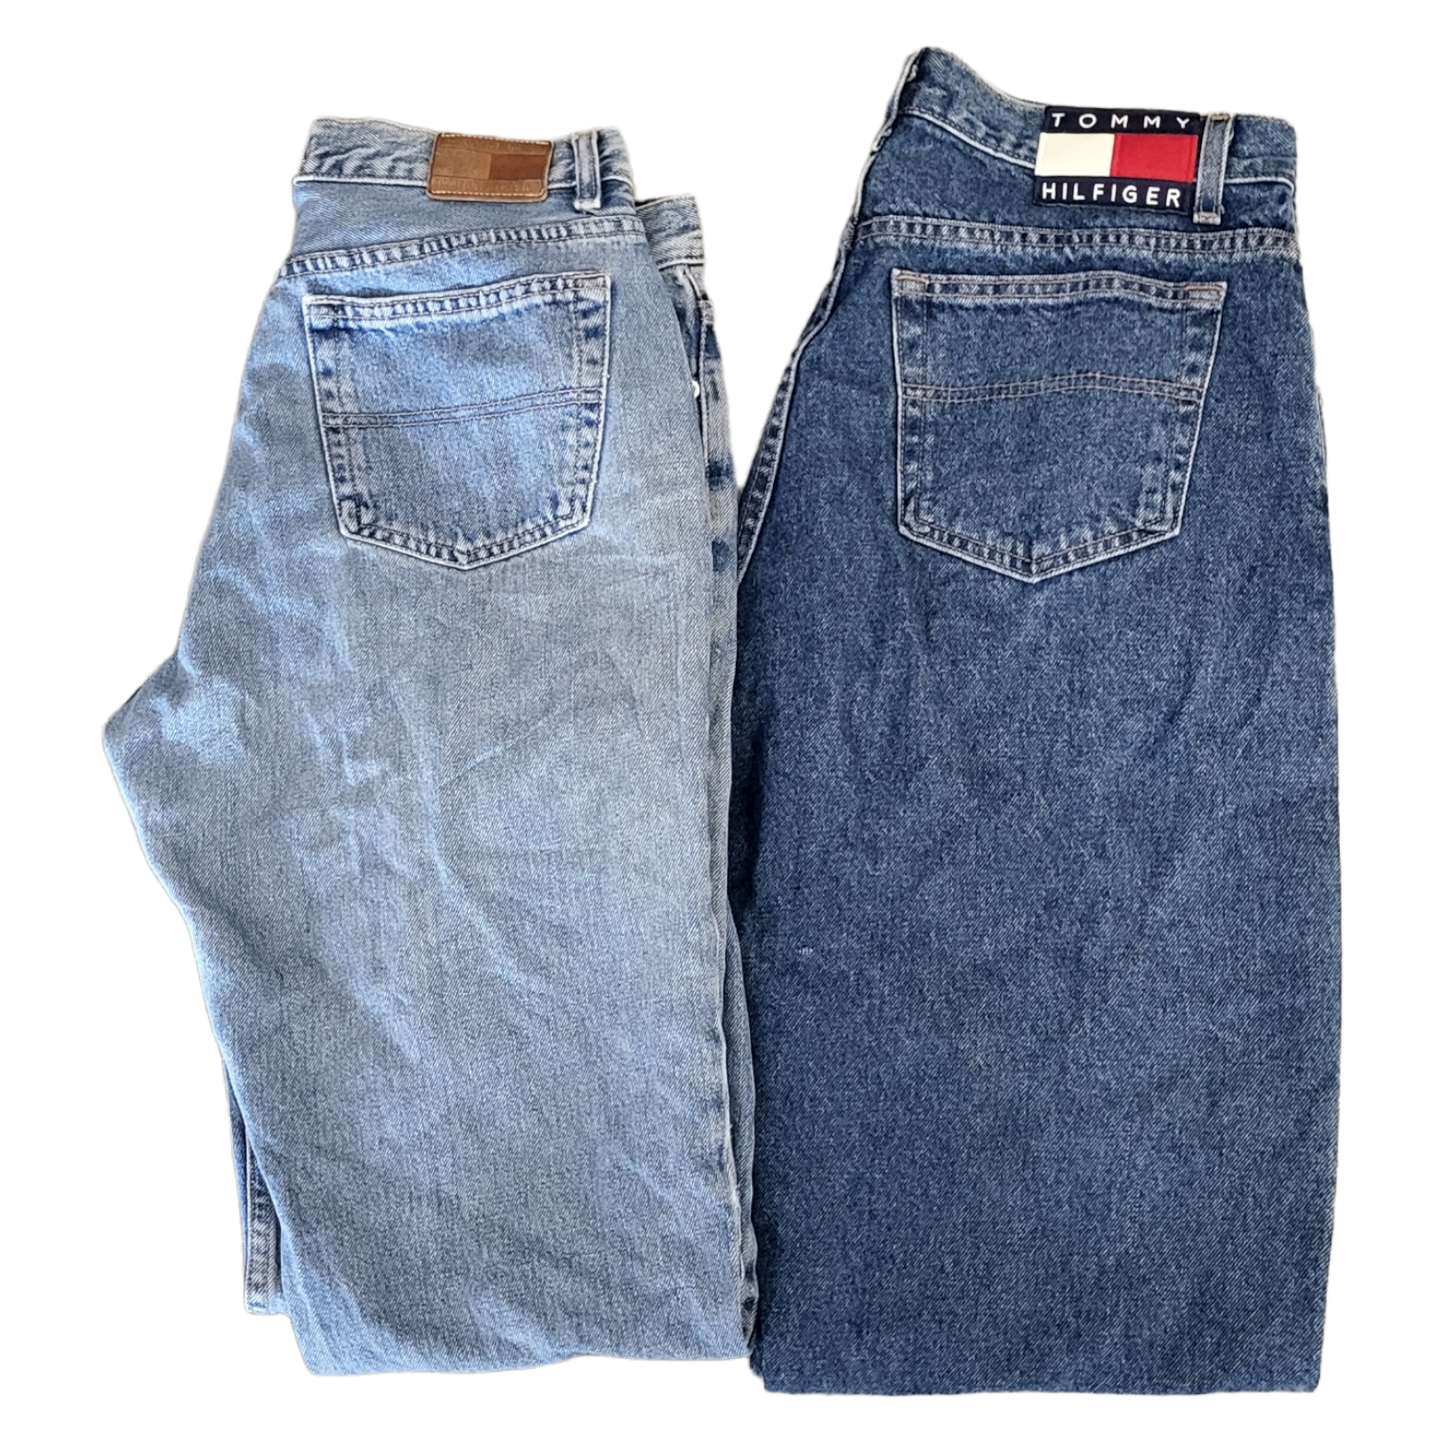 Men's Denim Jeans Intro Pack